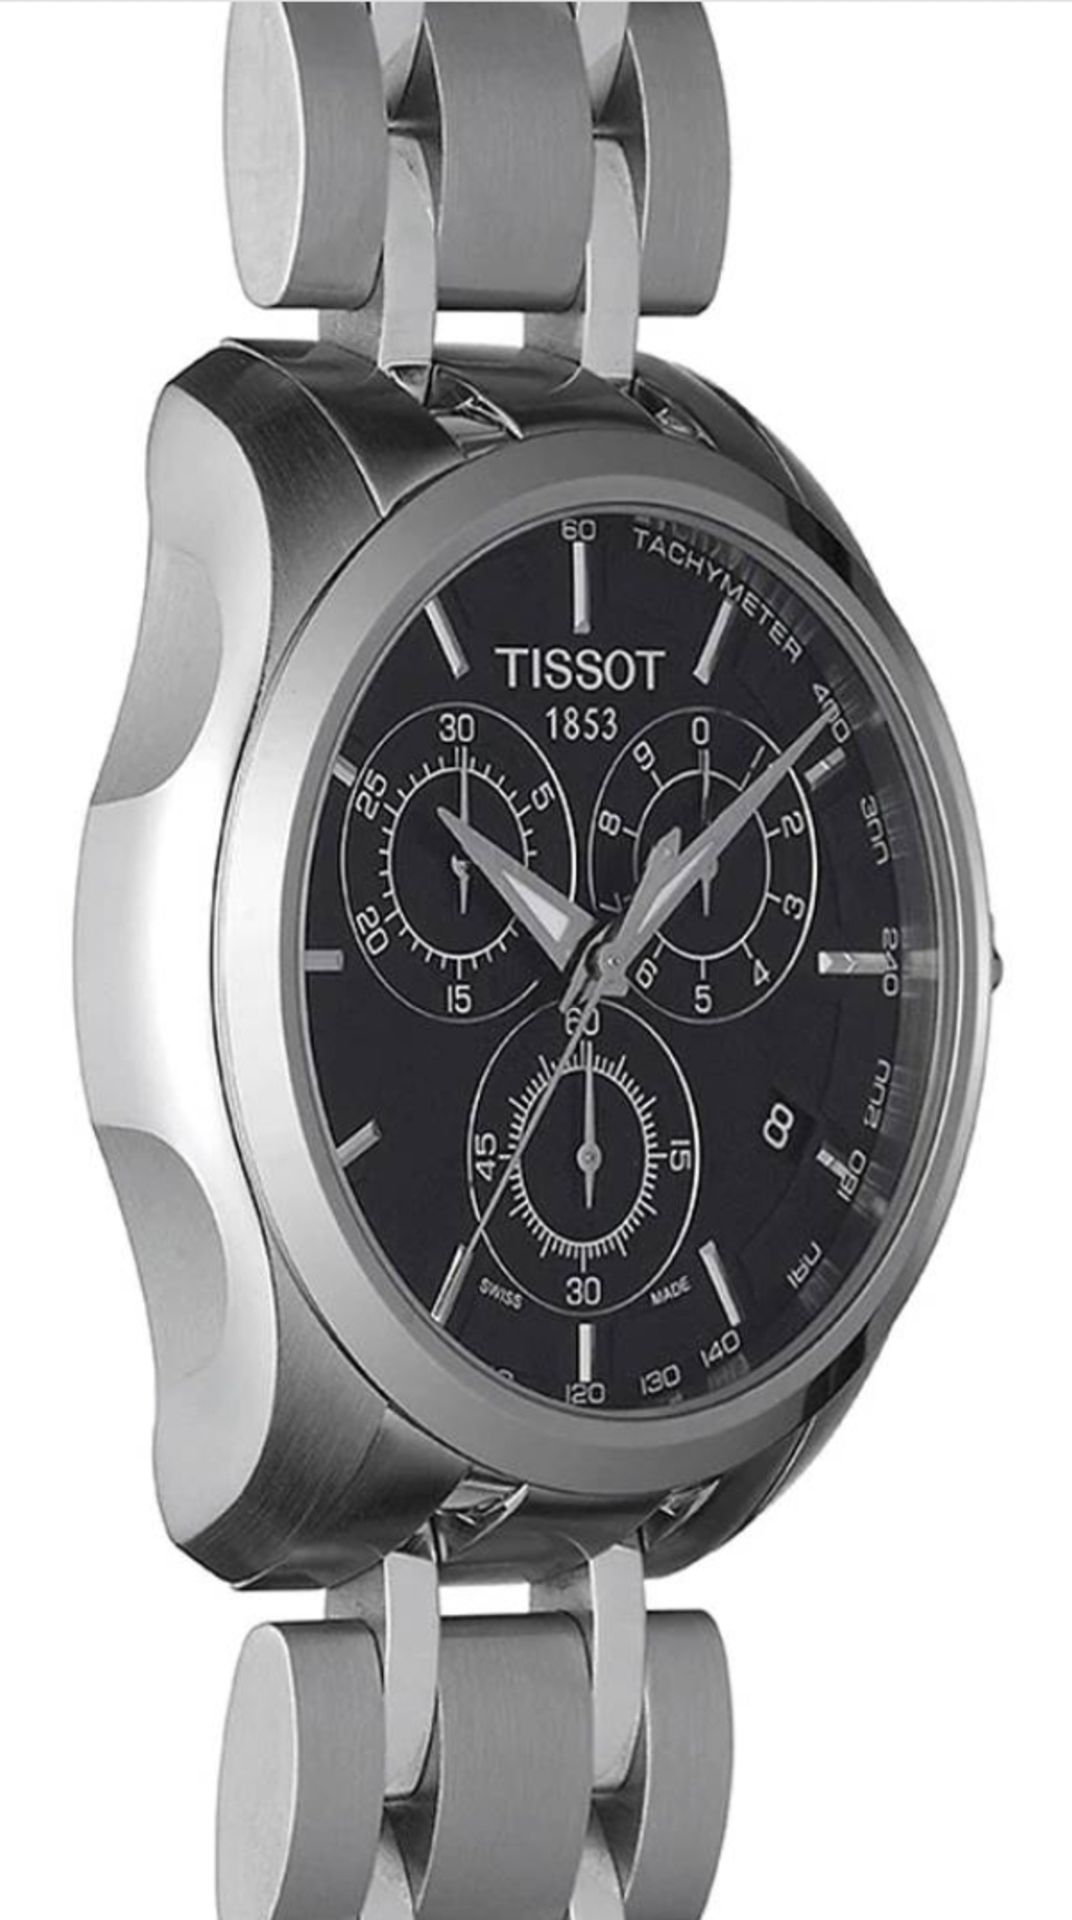 TISSOT T035.617.11.051.00 Men's Couturier Quartz Chronograph Watch - Image 5 of 10